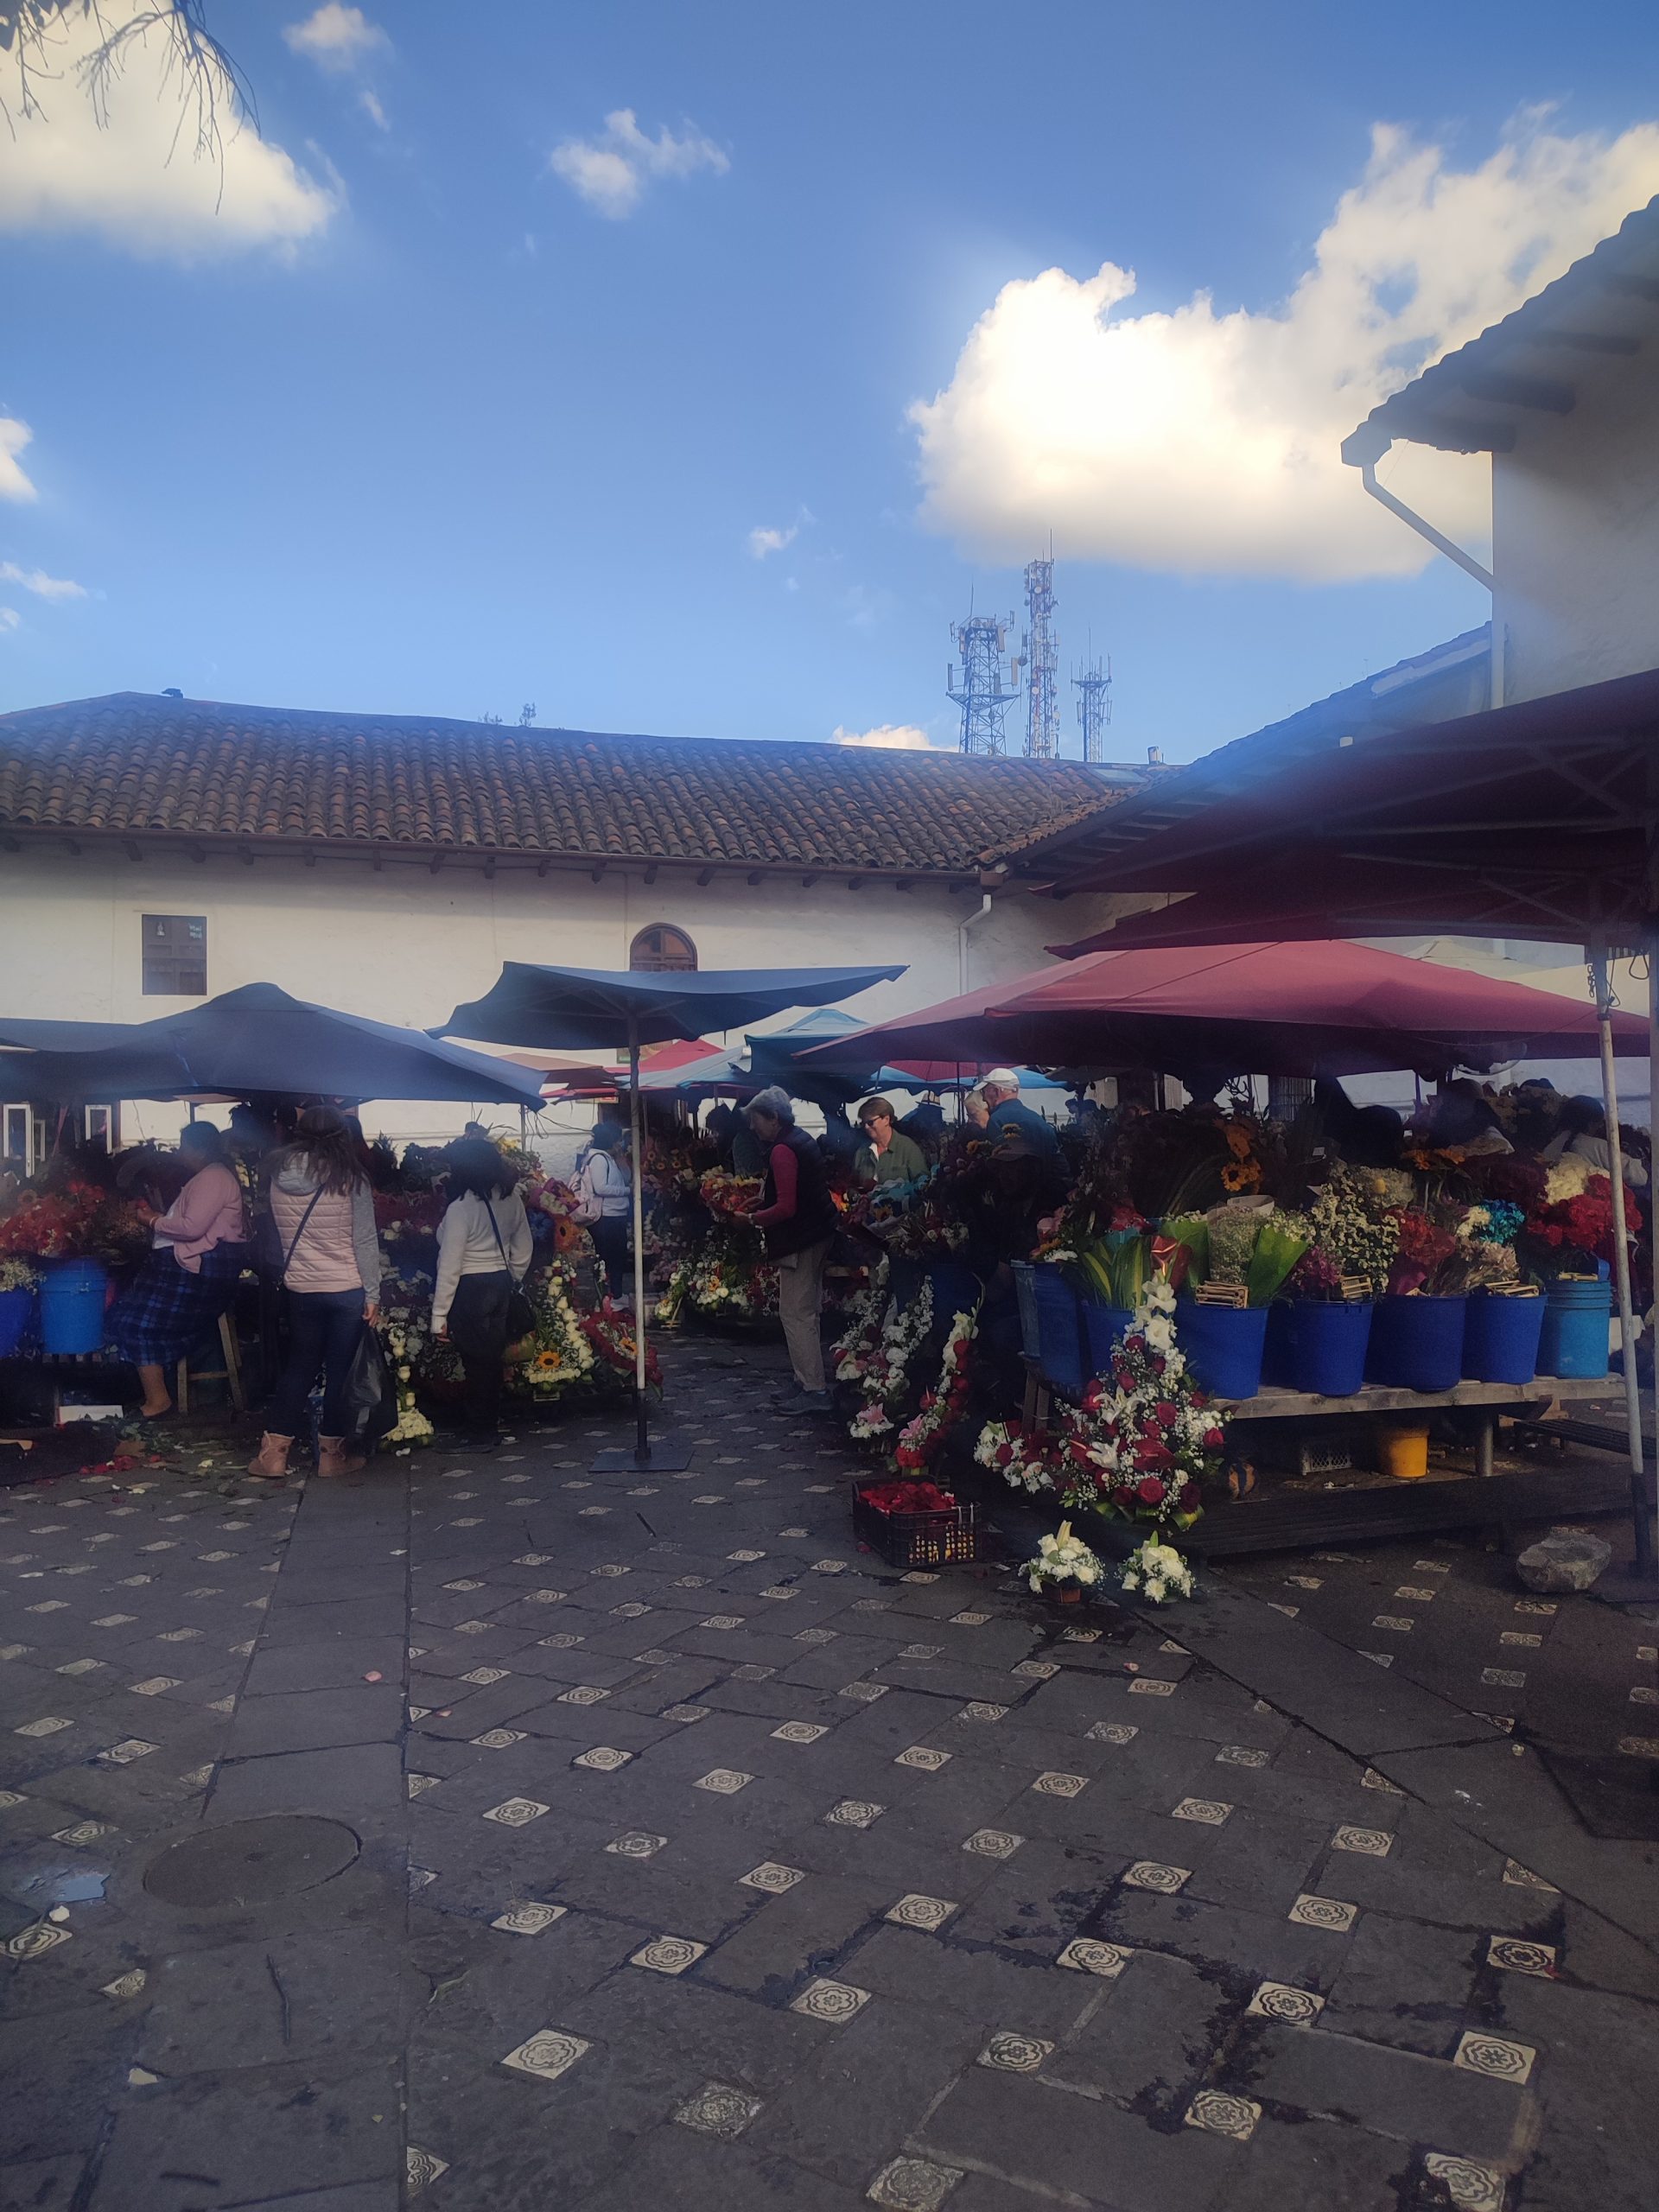 Flower market in Cuenca Ecuador